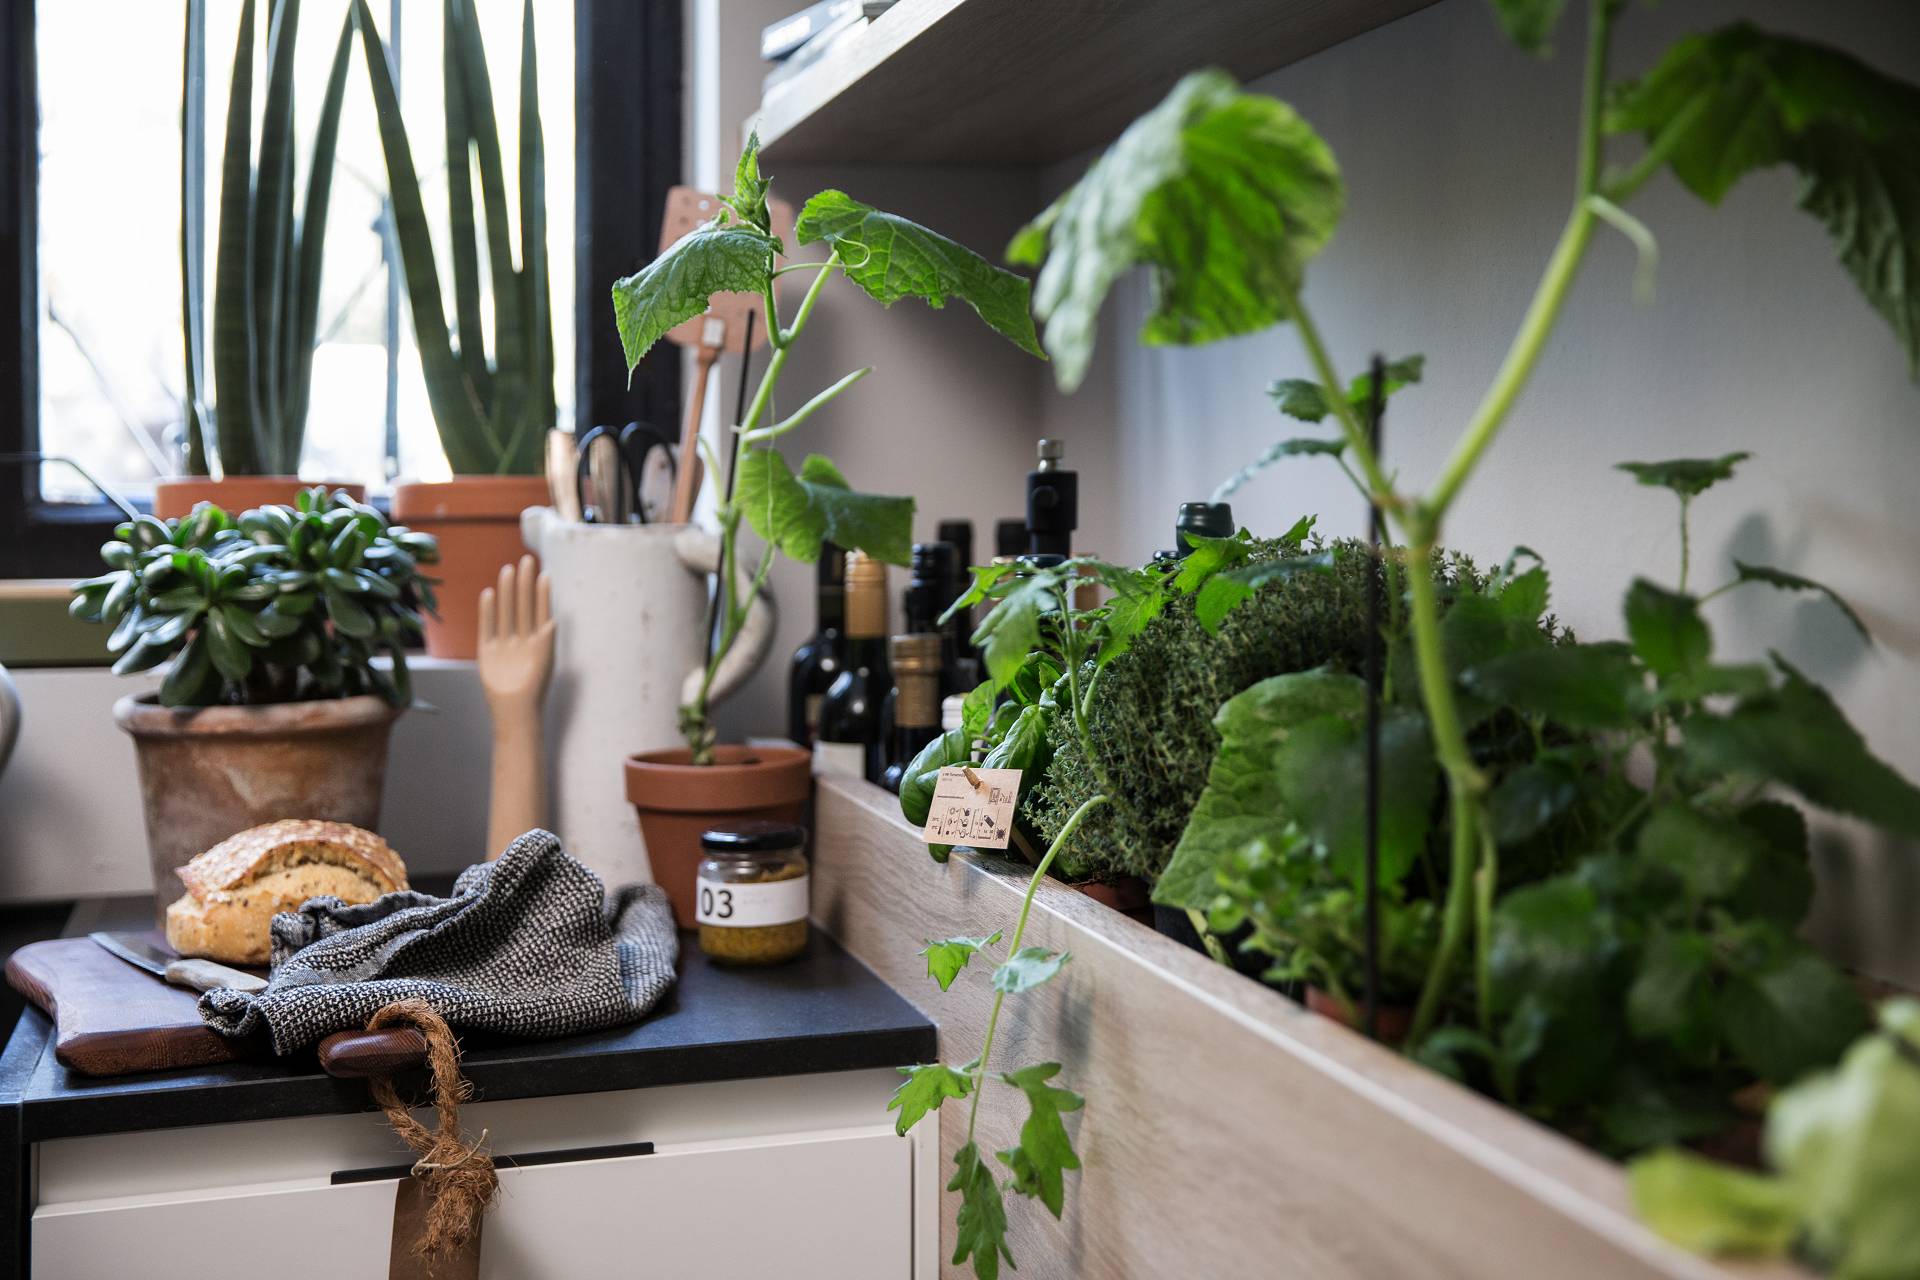 SieMatic Urban S2 SE herb garden grows fresh herbs in the kitchen